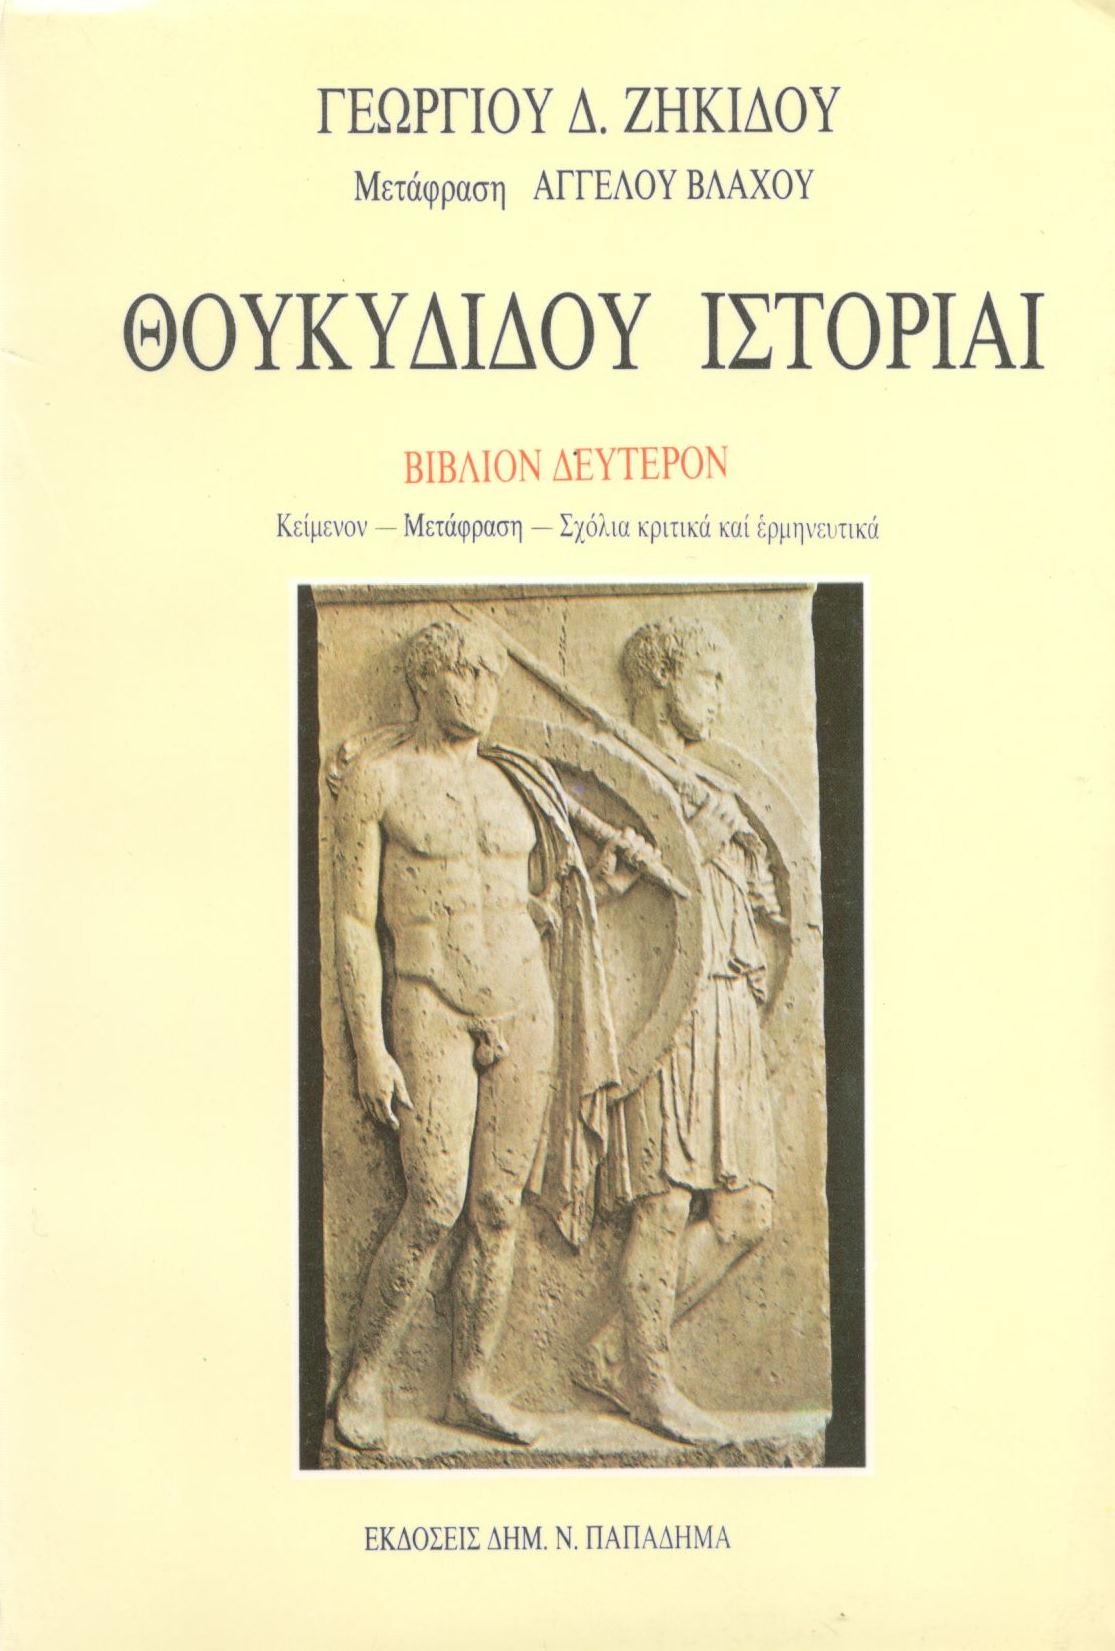 Θουκυδίδου ιστορίαι. Ο Πελοποννησίων και Αθηναίων πόλεμος, Βιβλίο Δεύτερο